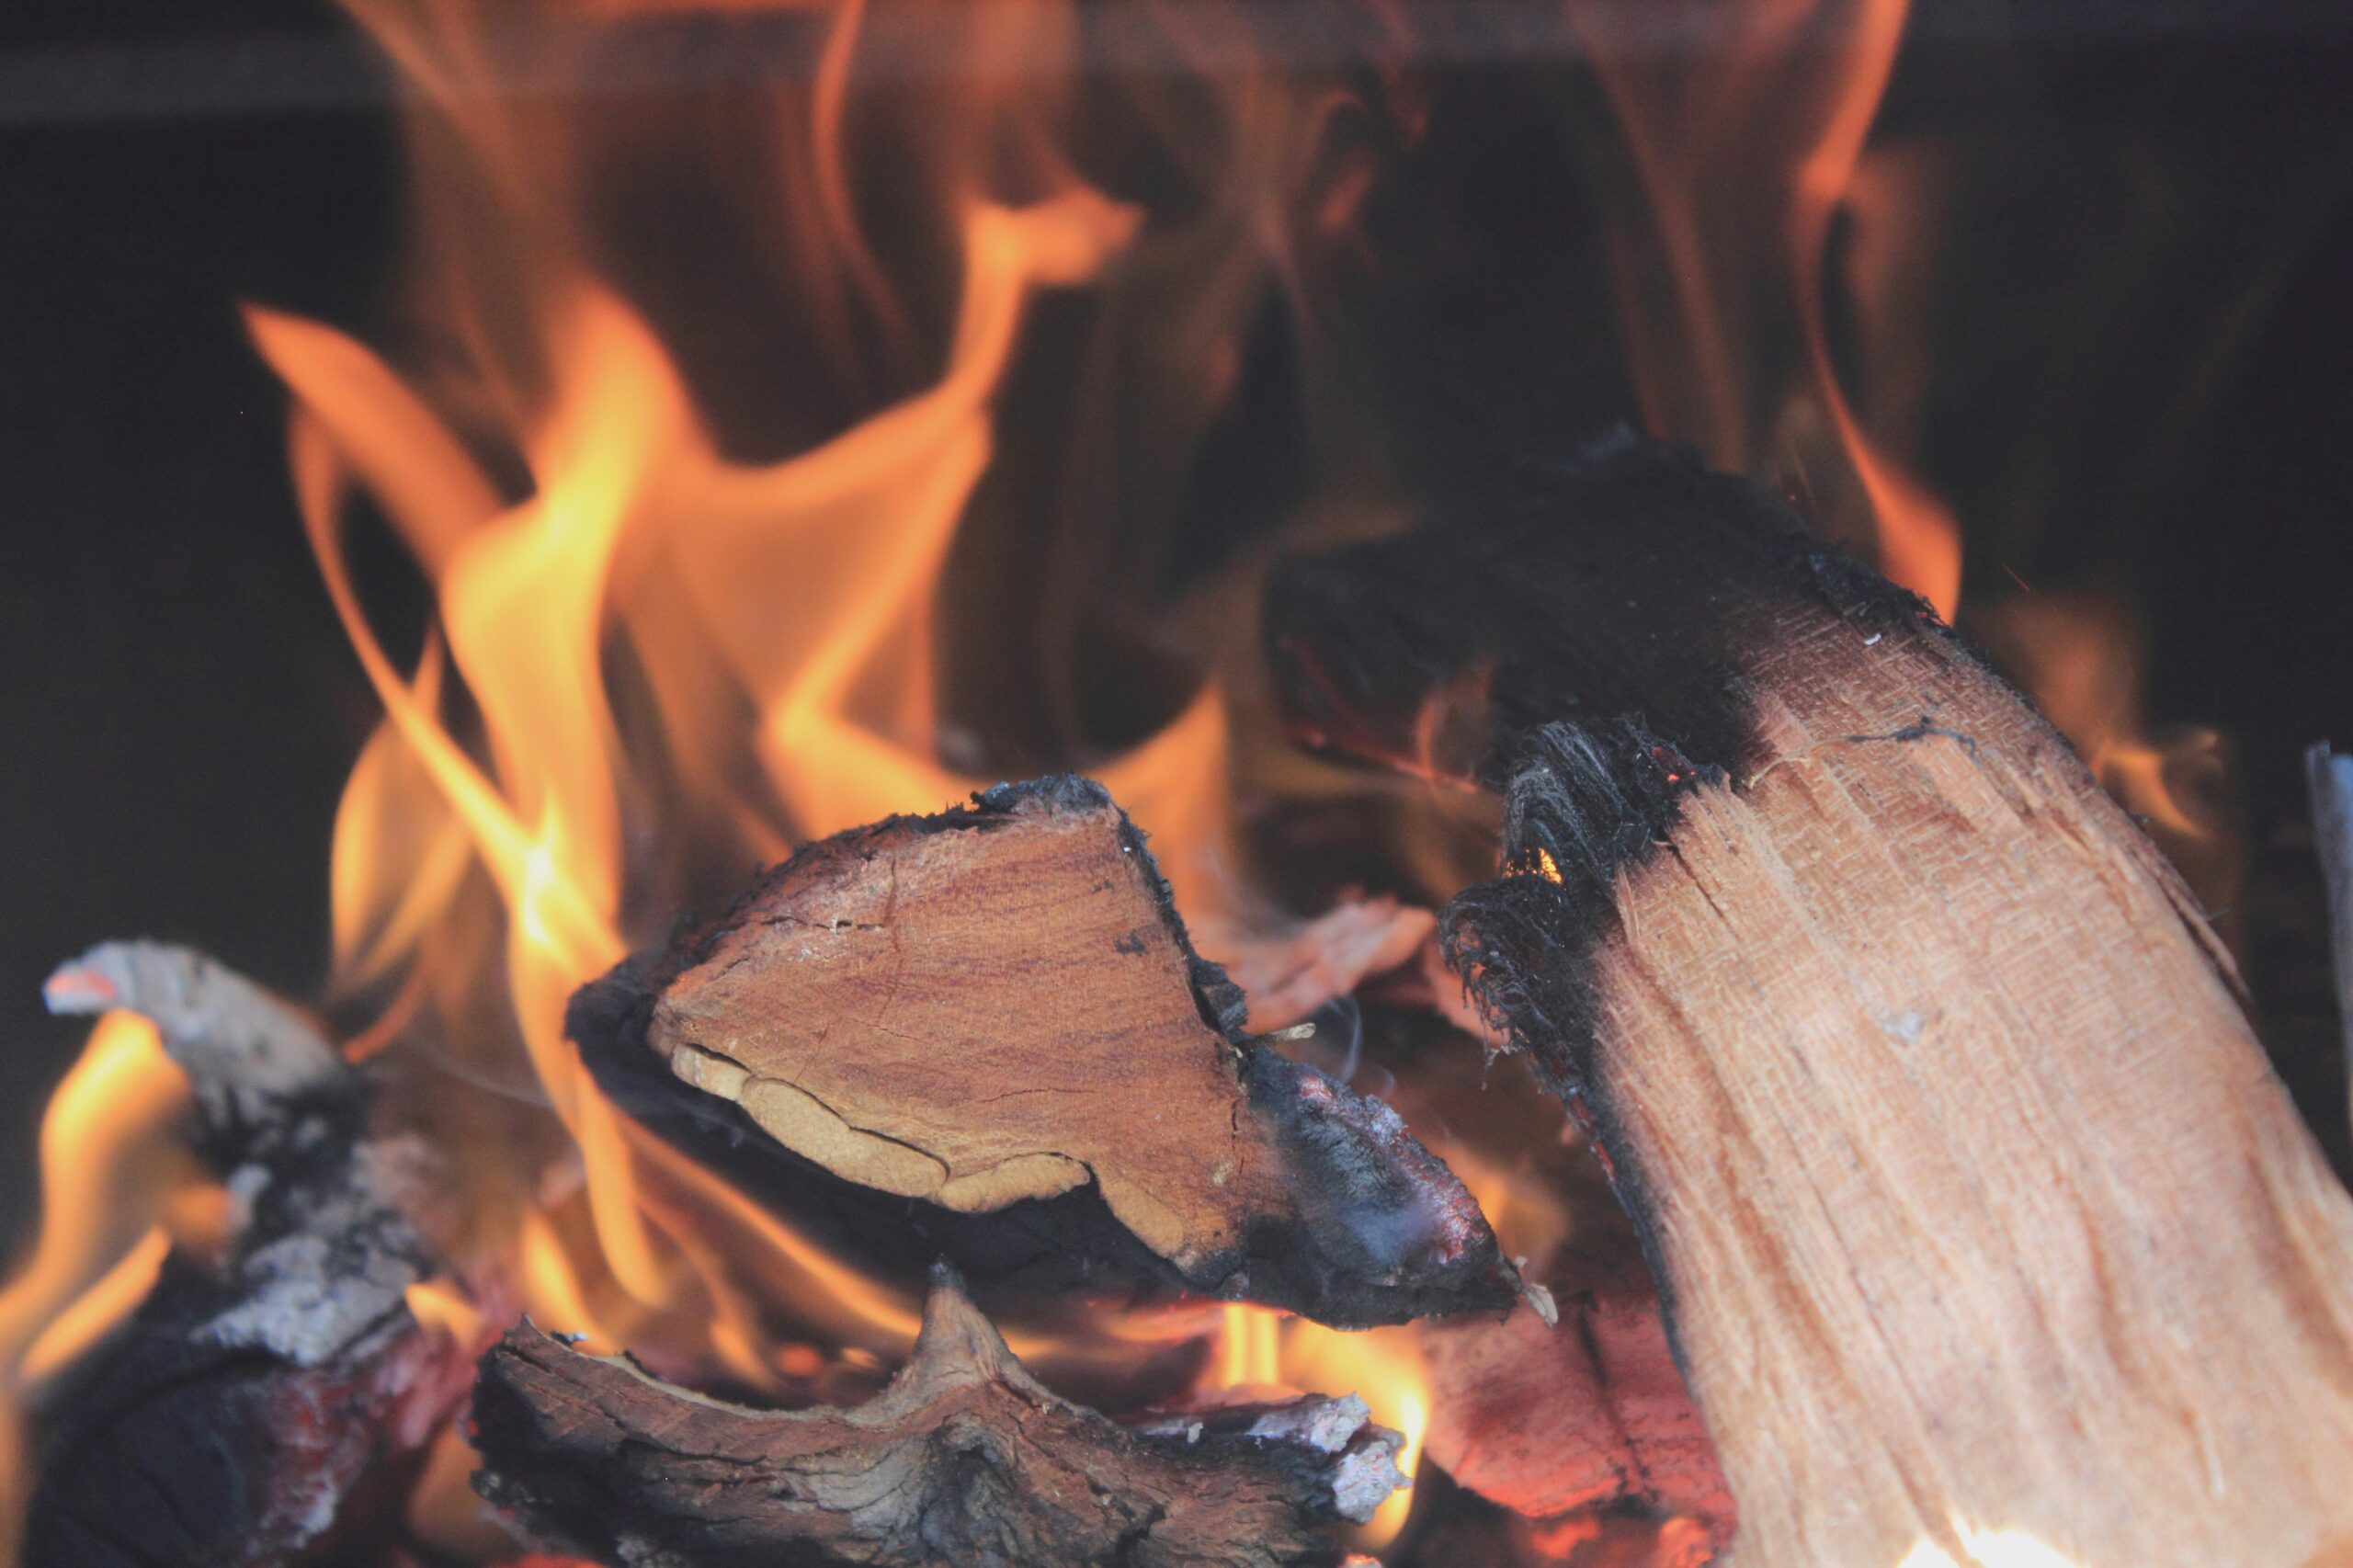 Burning logs